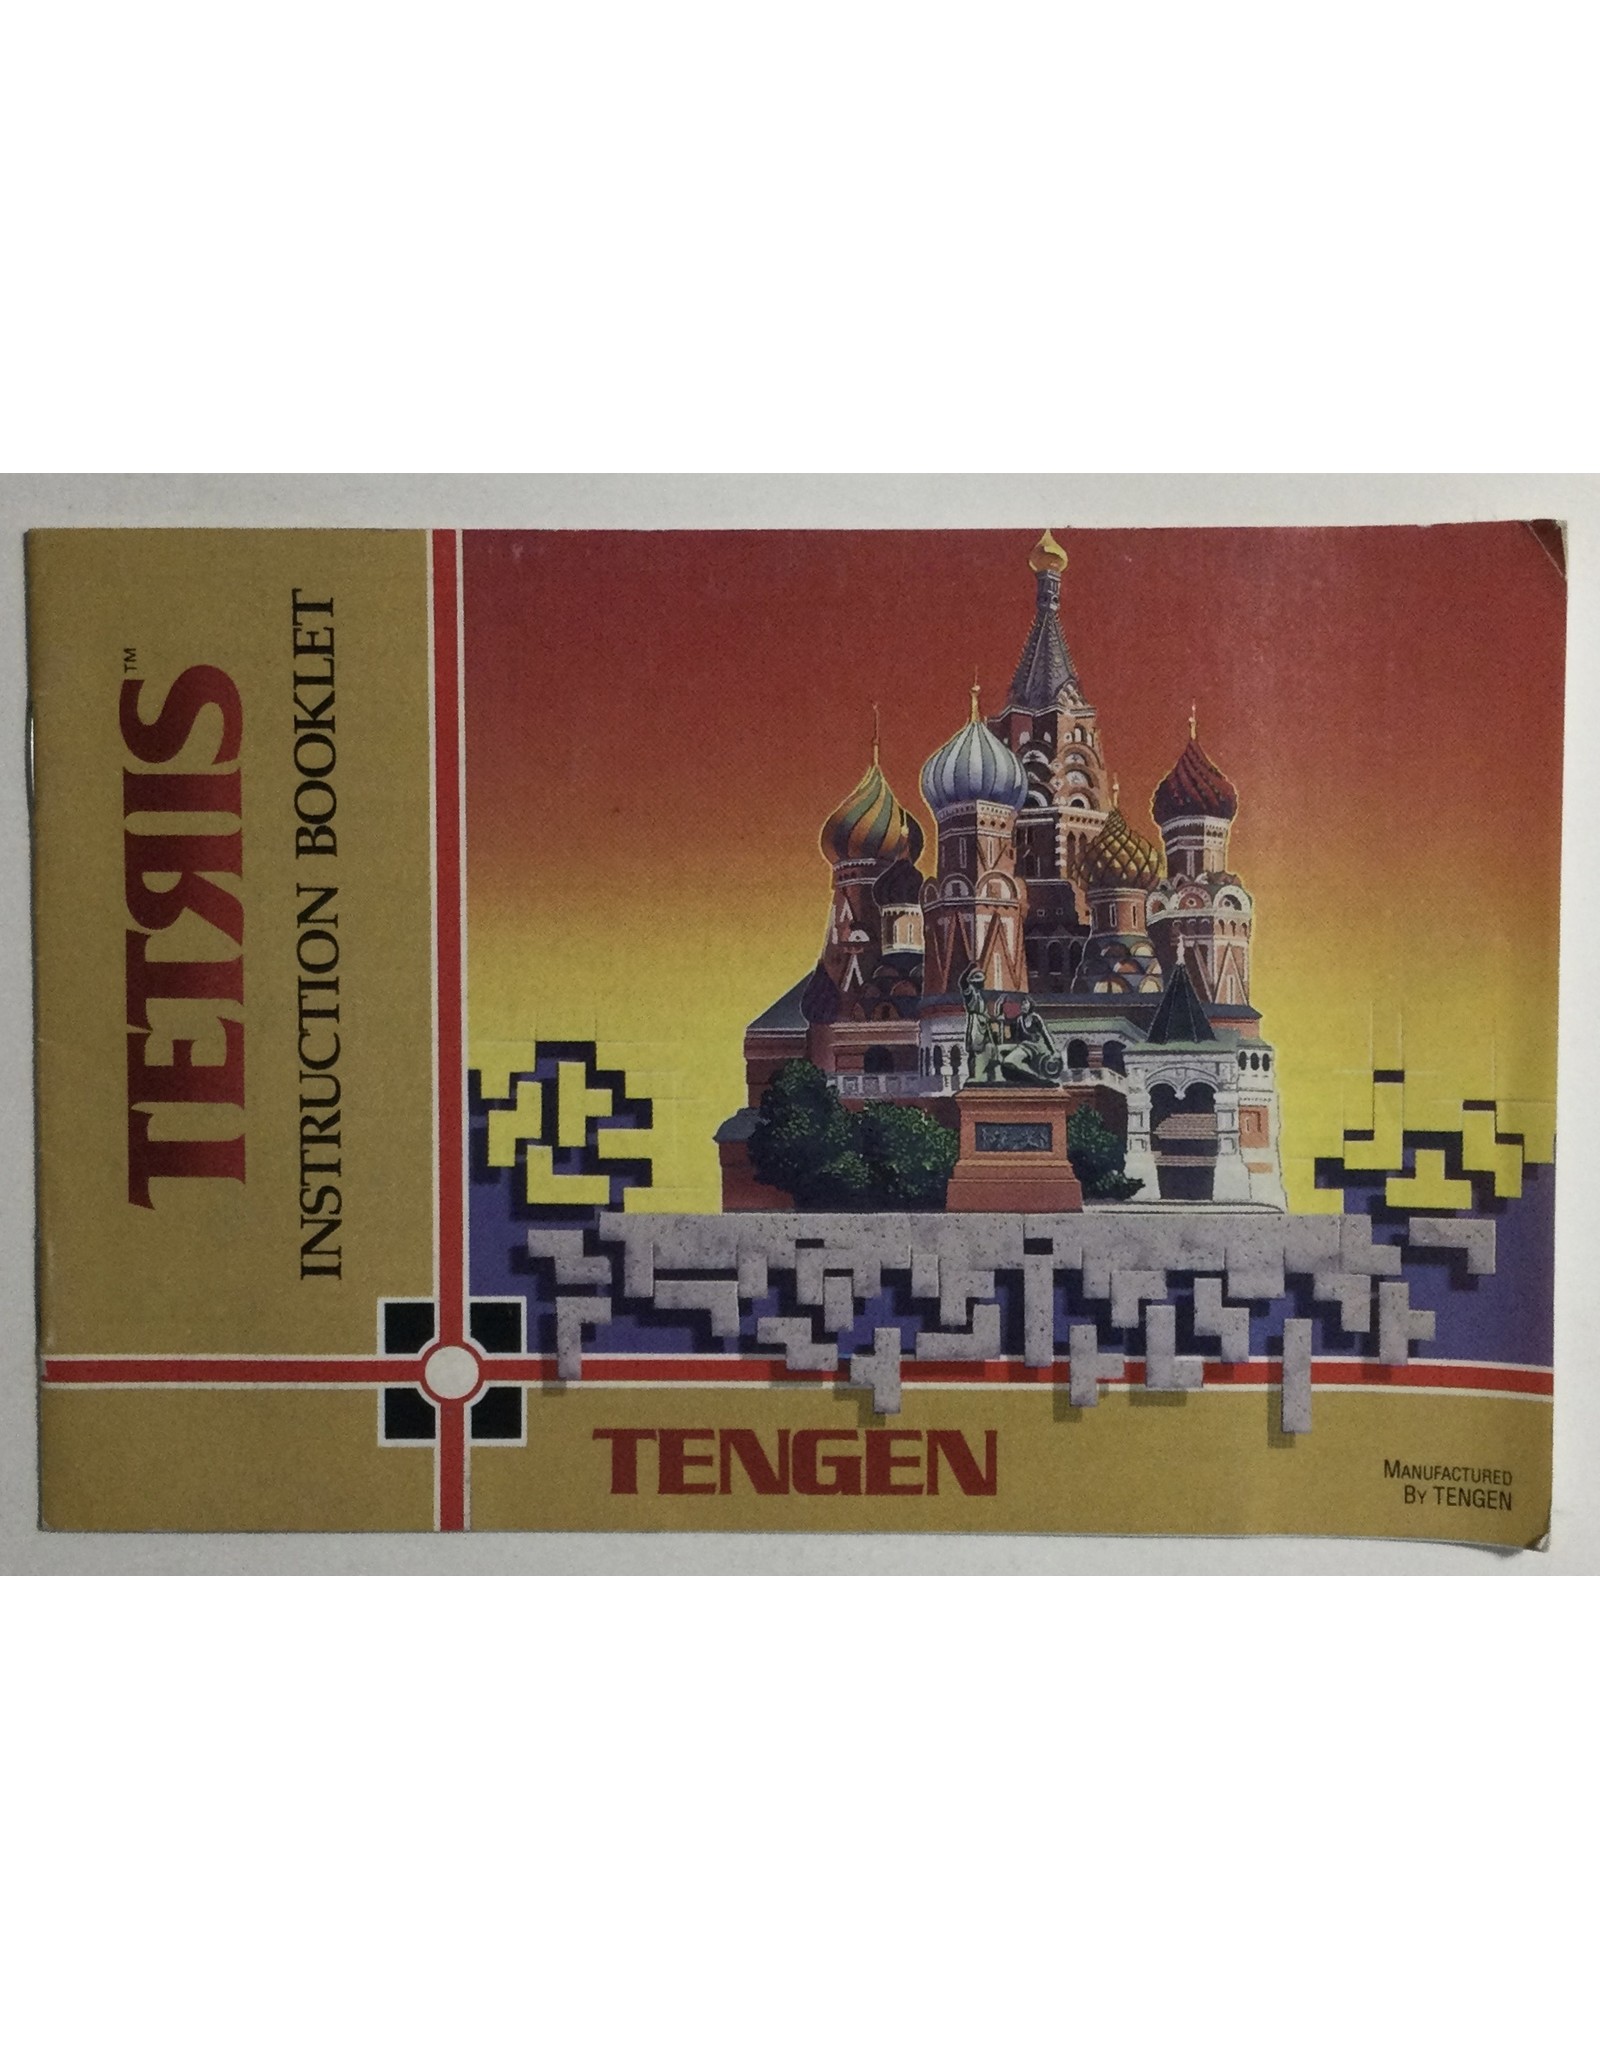 Mattel Tetris for Nintendo Entertainment System (NES)